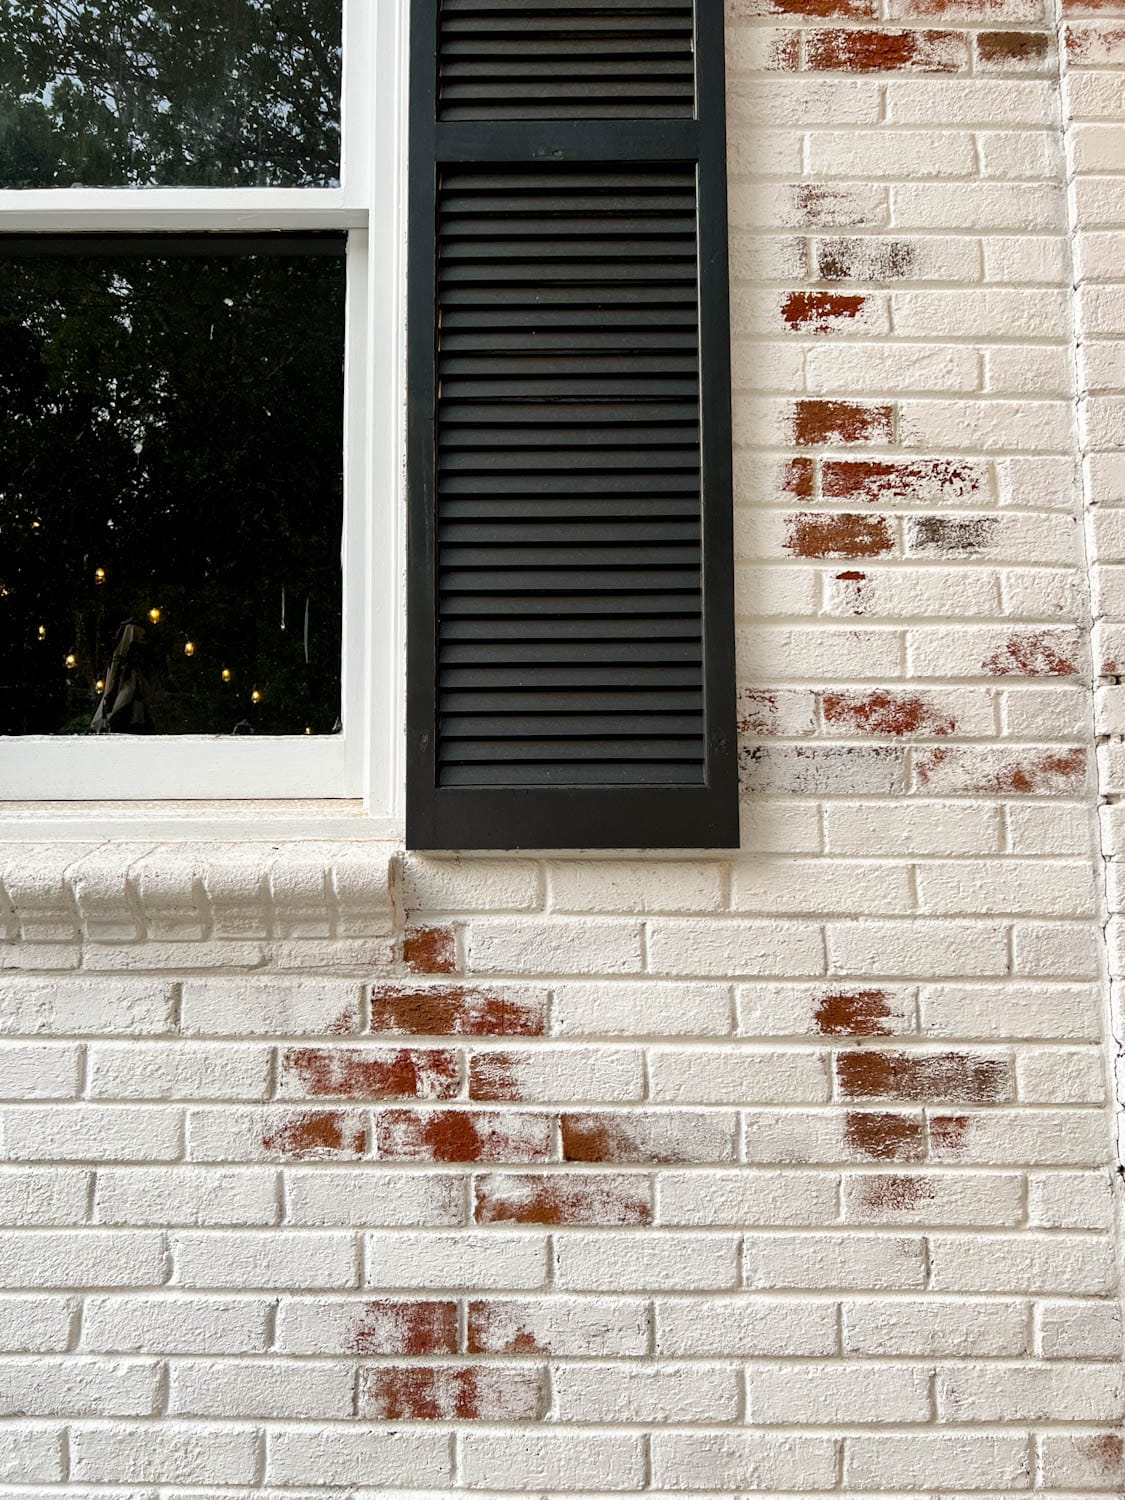 Close up of limewash on exterior brick